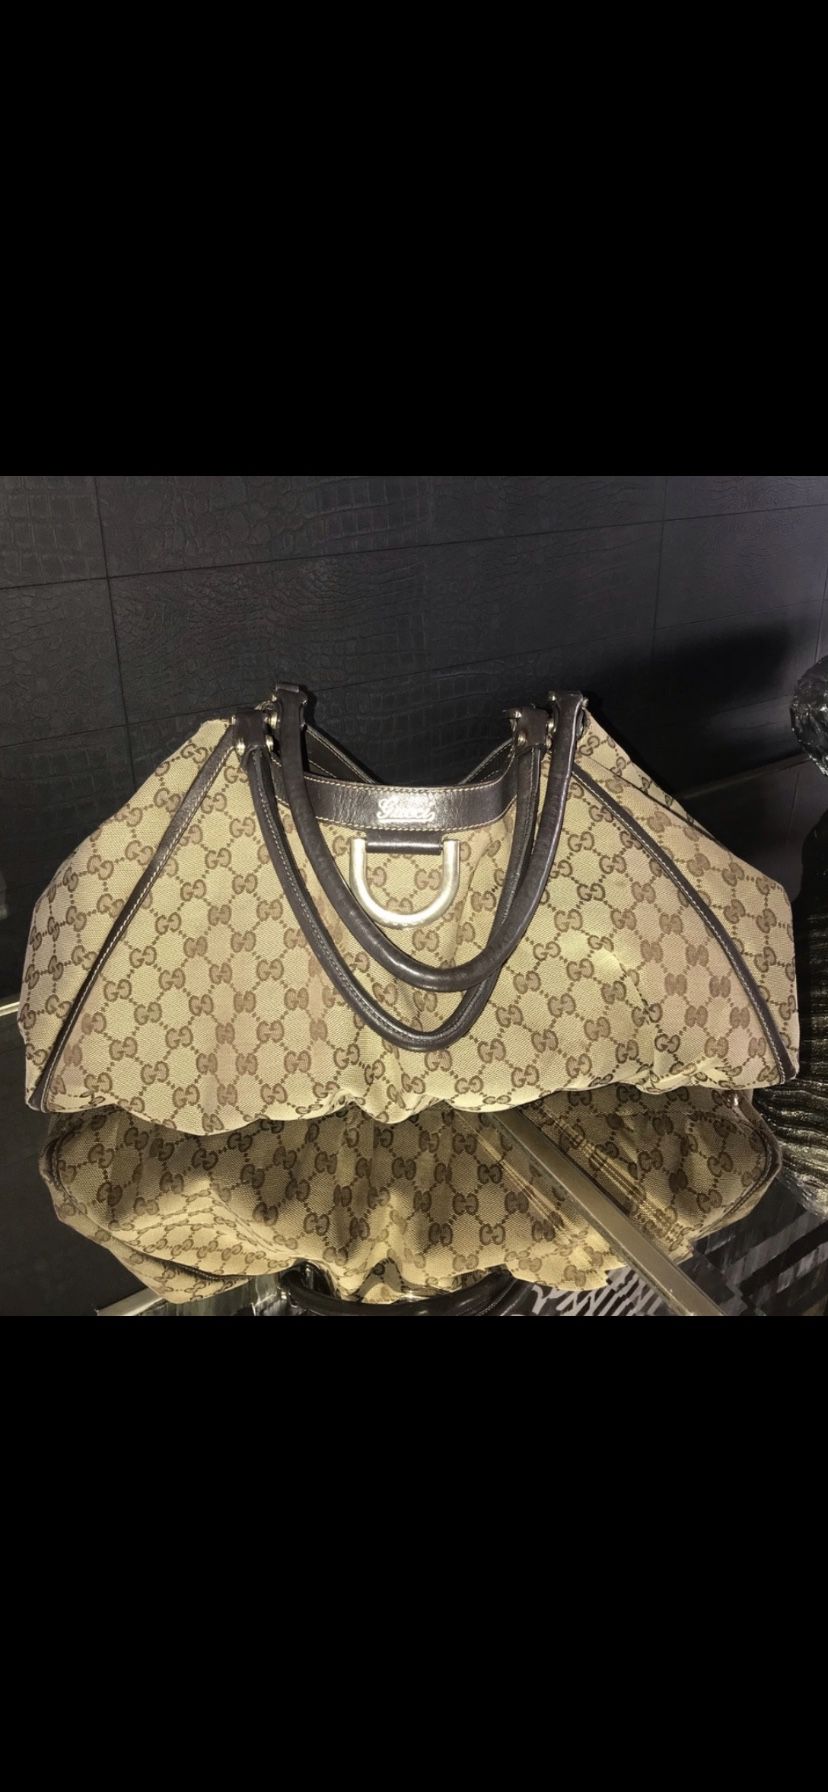 Gucci Bag 